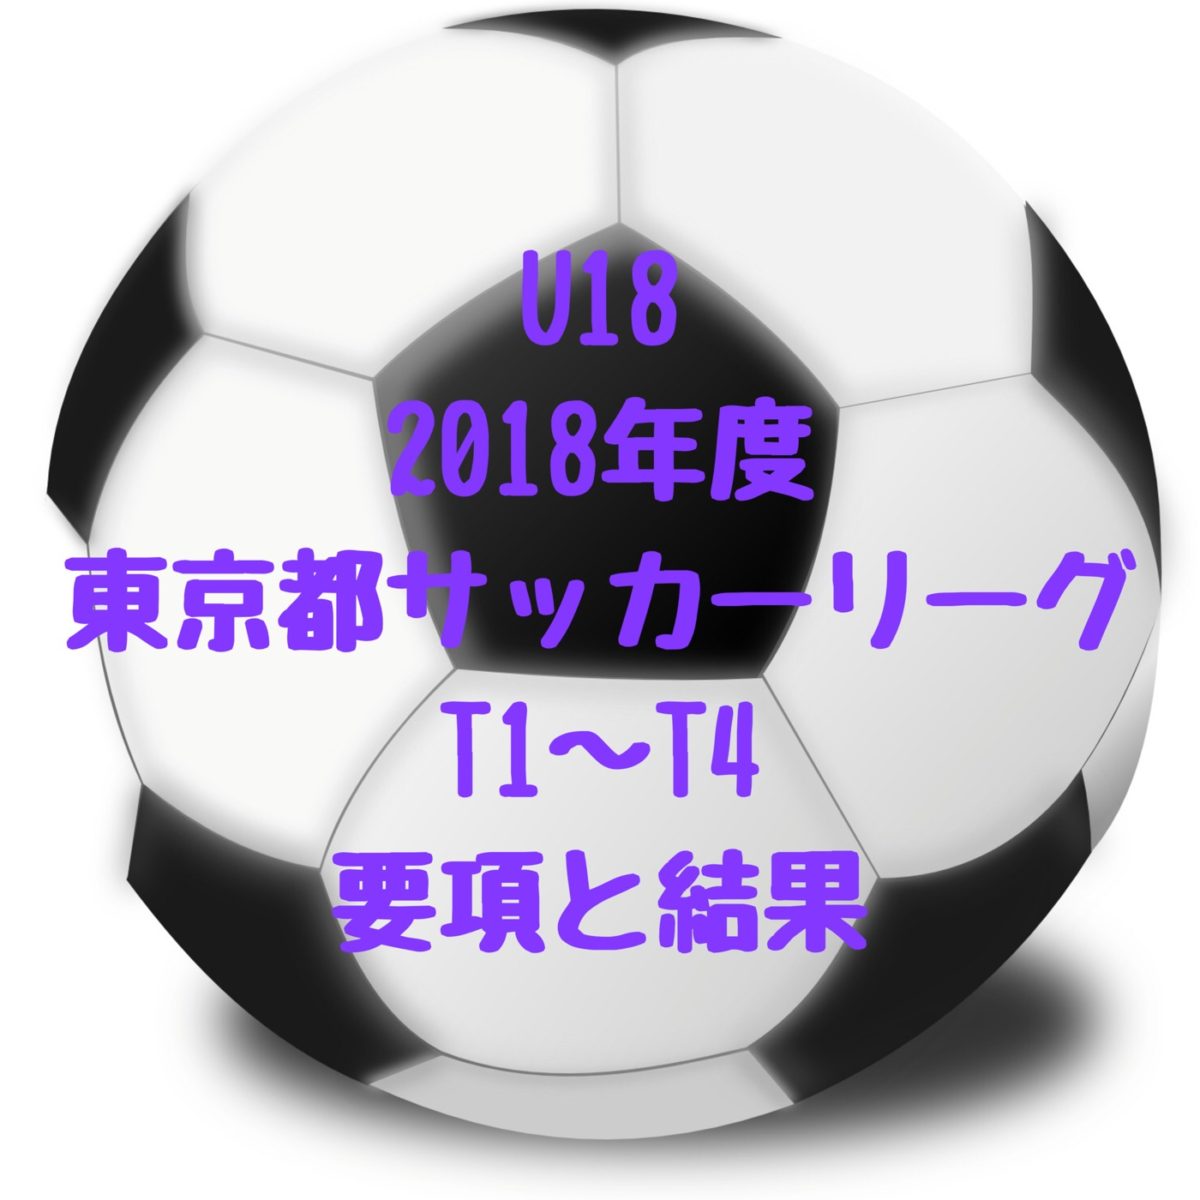 U18 Tリーグ T1 T2 T3 T4 東京 18年度保存版 高校サッカー 東京都u18サッカーリーグ 最終順位とｔリーグ1位 56位一覧